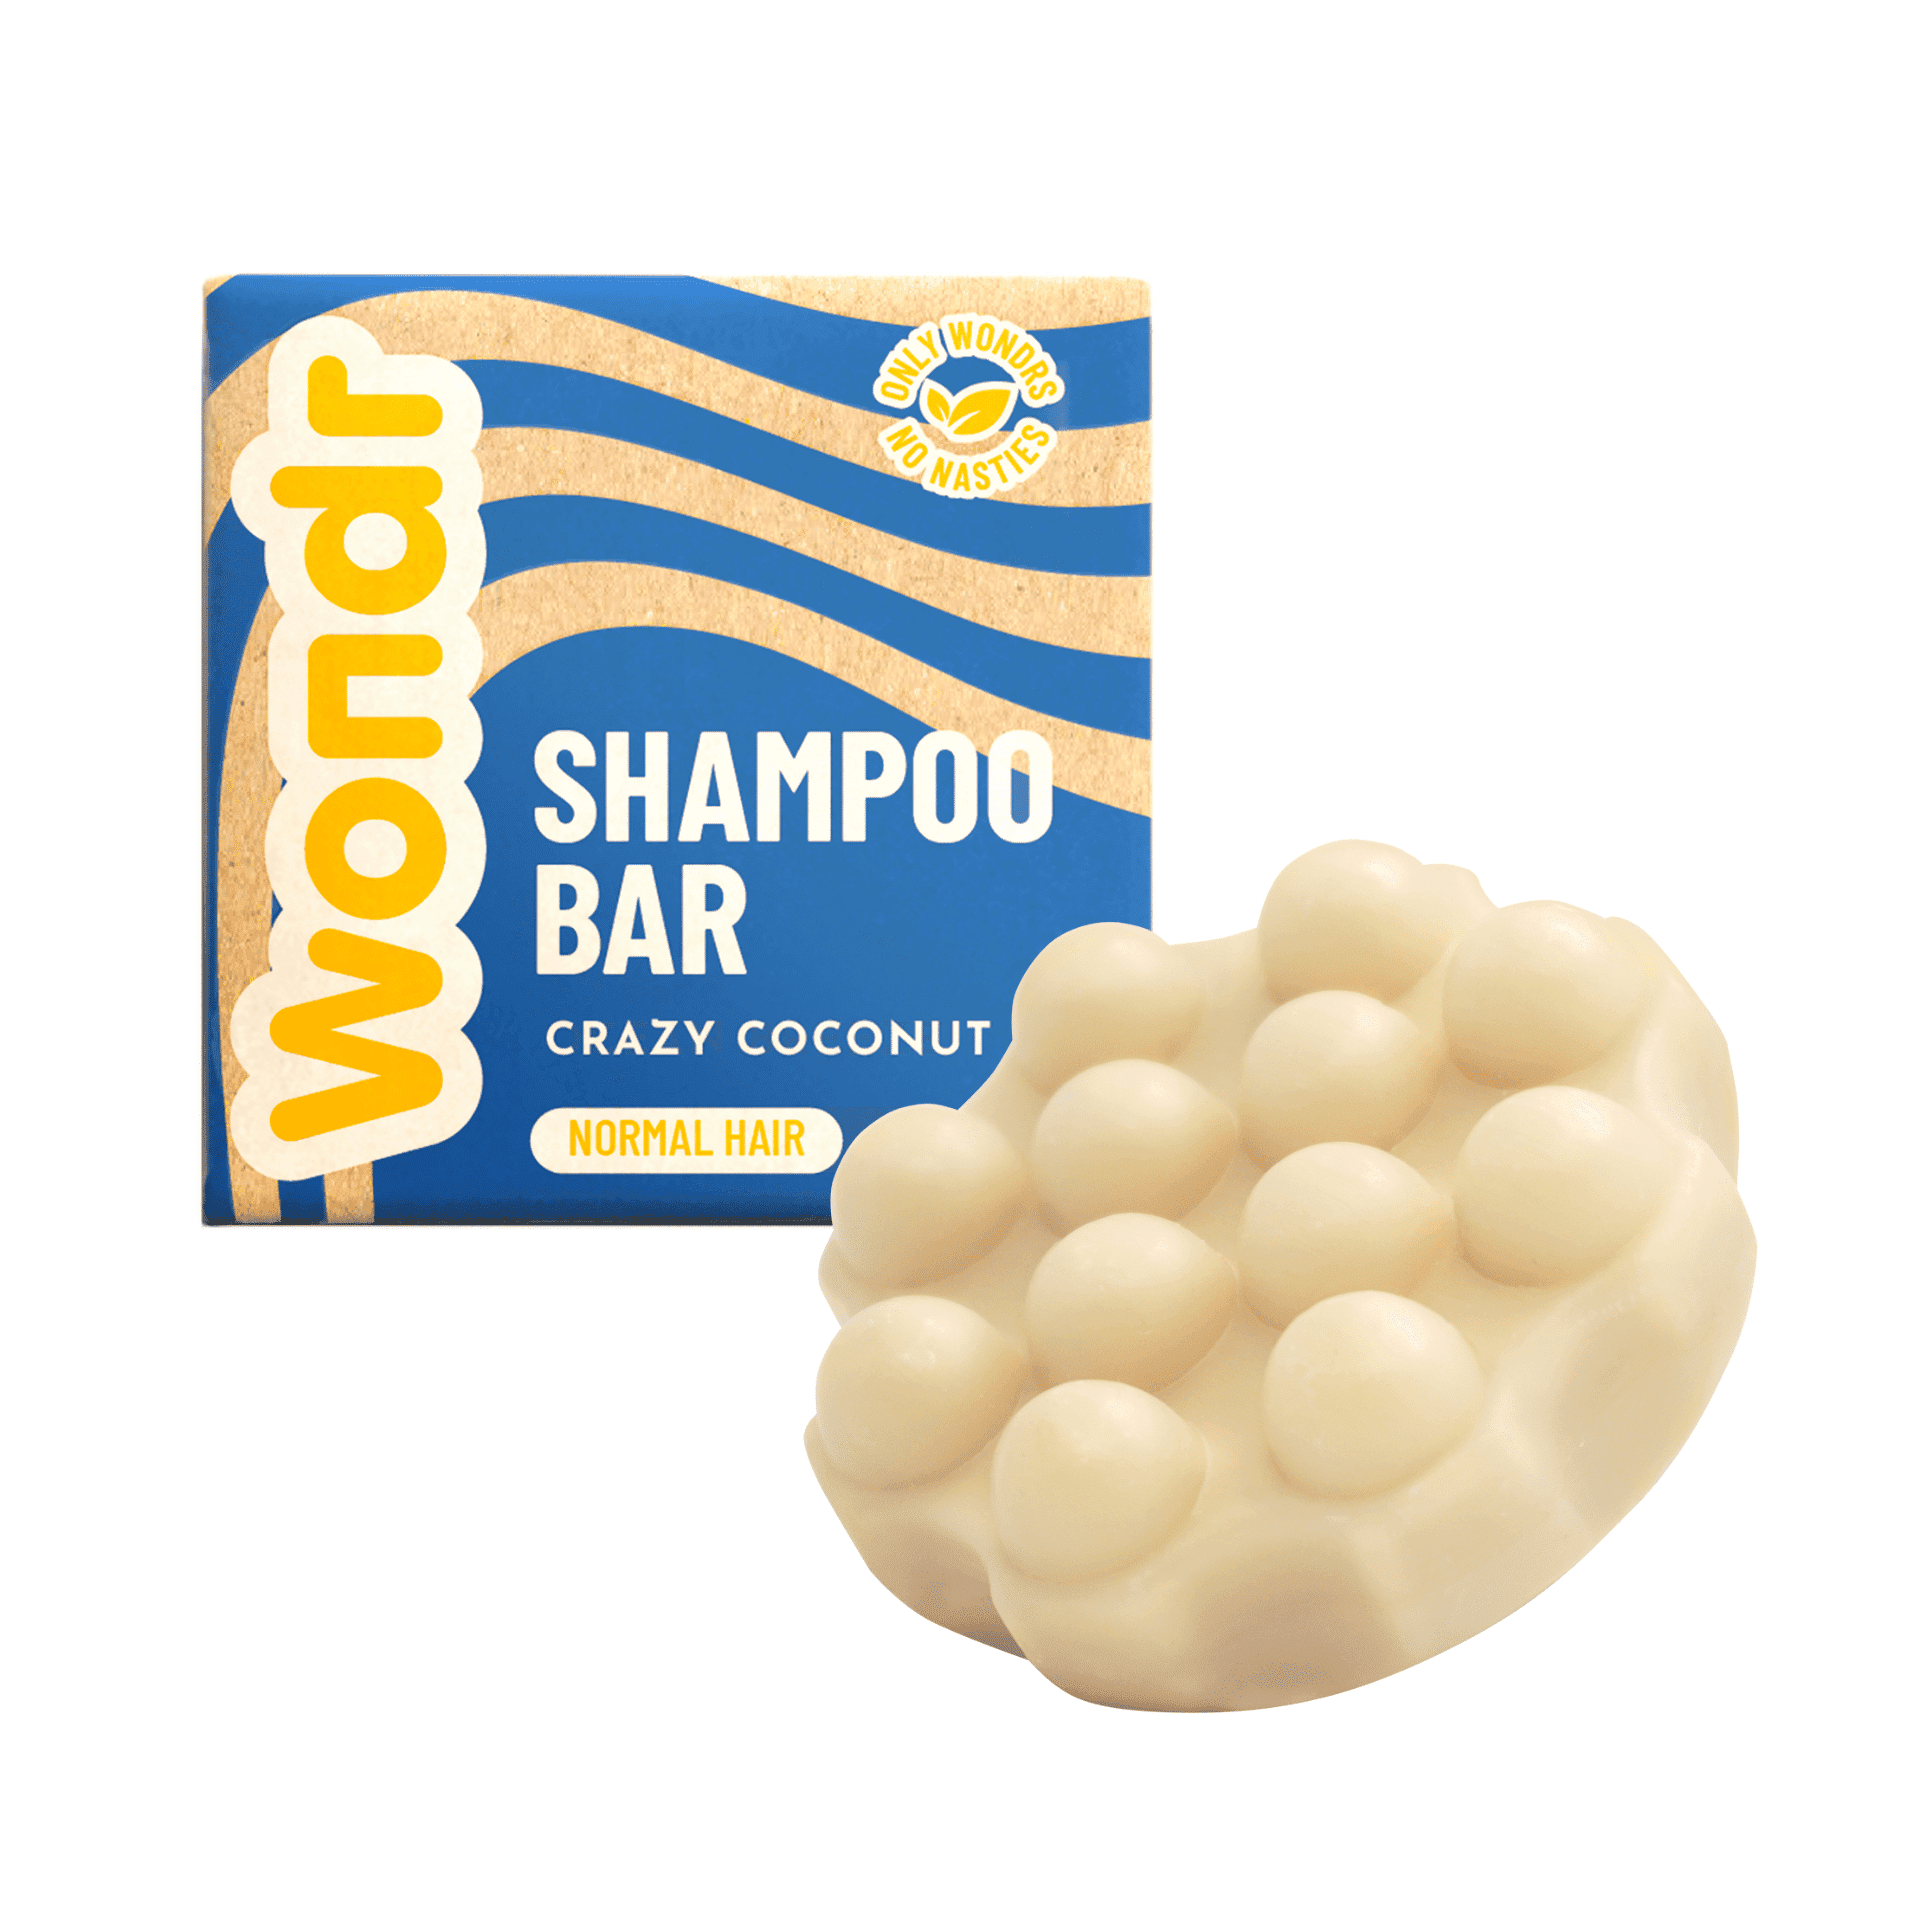 WONDR Shampoo Bar Crazy Coconut